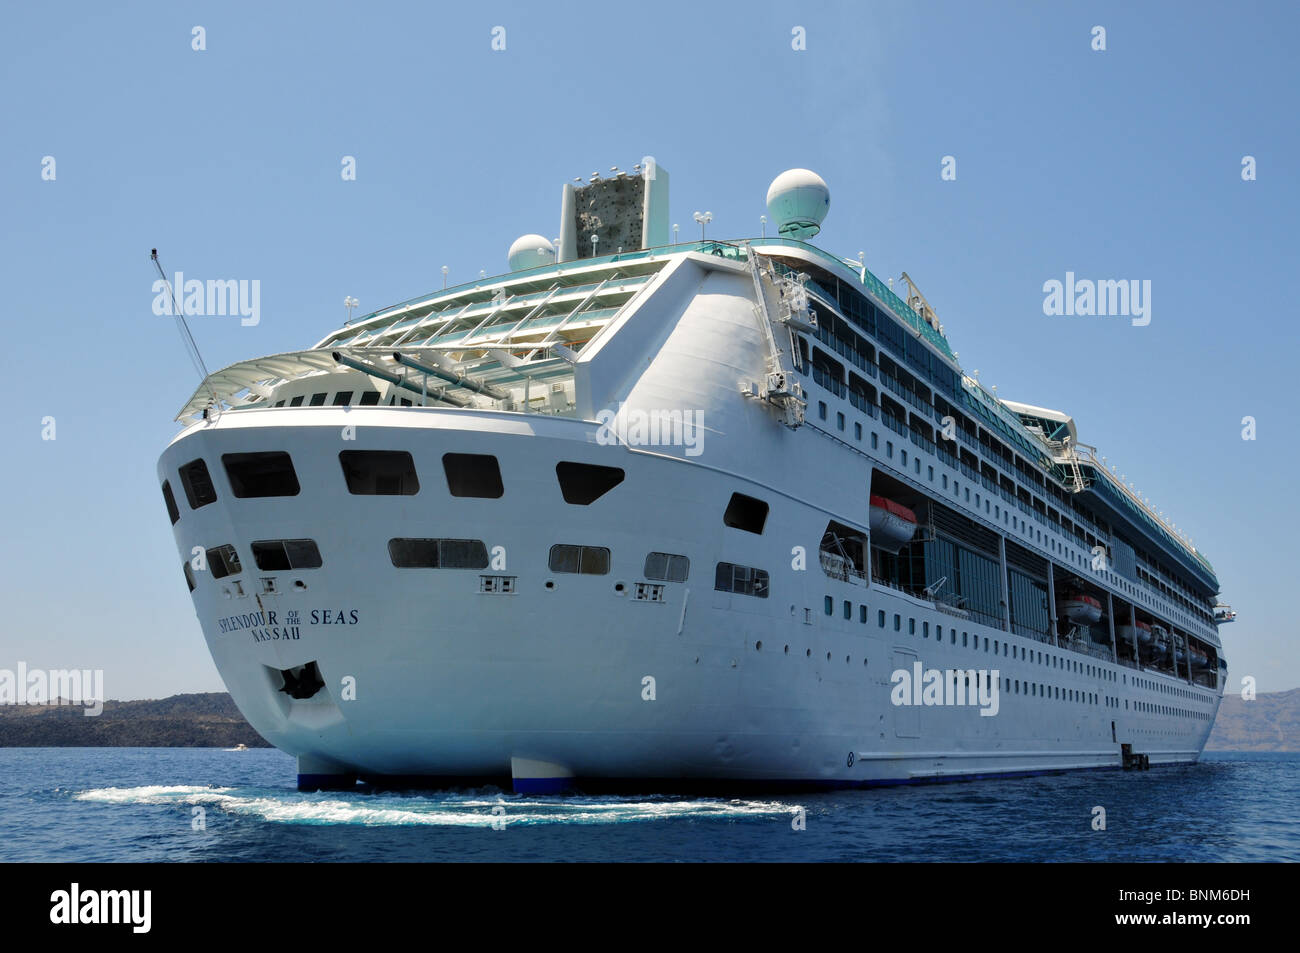 Royal Caribbean International per MV splendore dei mari ormeggiato offshore, Santorini Grecia Foto Stock